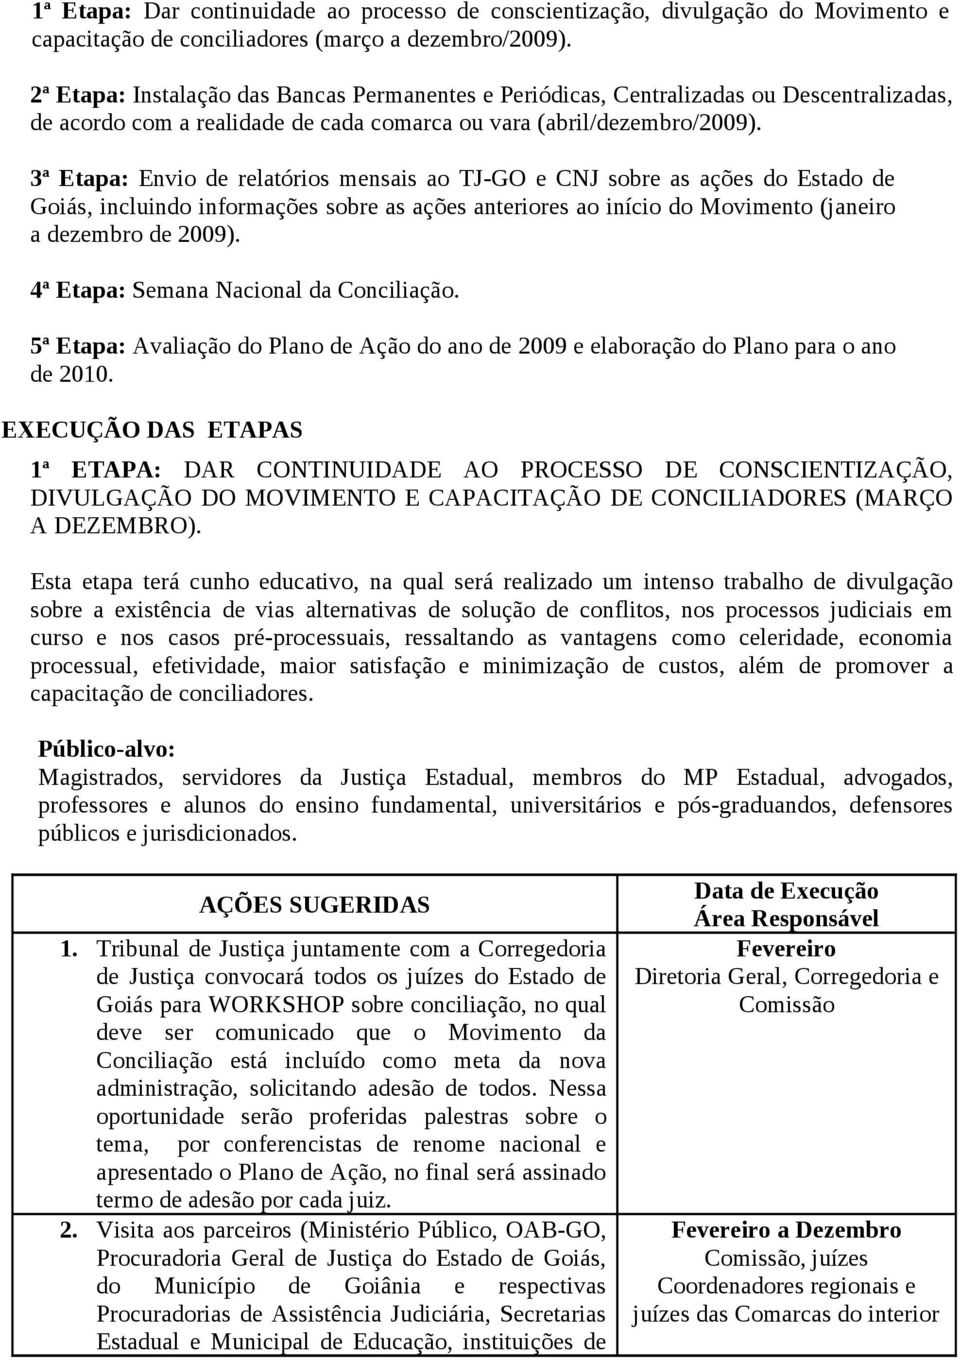 3ª Etapa: Envio de relatórios mensais ao TJ-GO e CNJ sobre as ações do Estado de Goiás, incluindo informações sobre as ações anteriores ao início do Movimento (janeiro a dezembro de 2009).